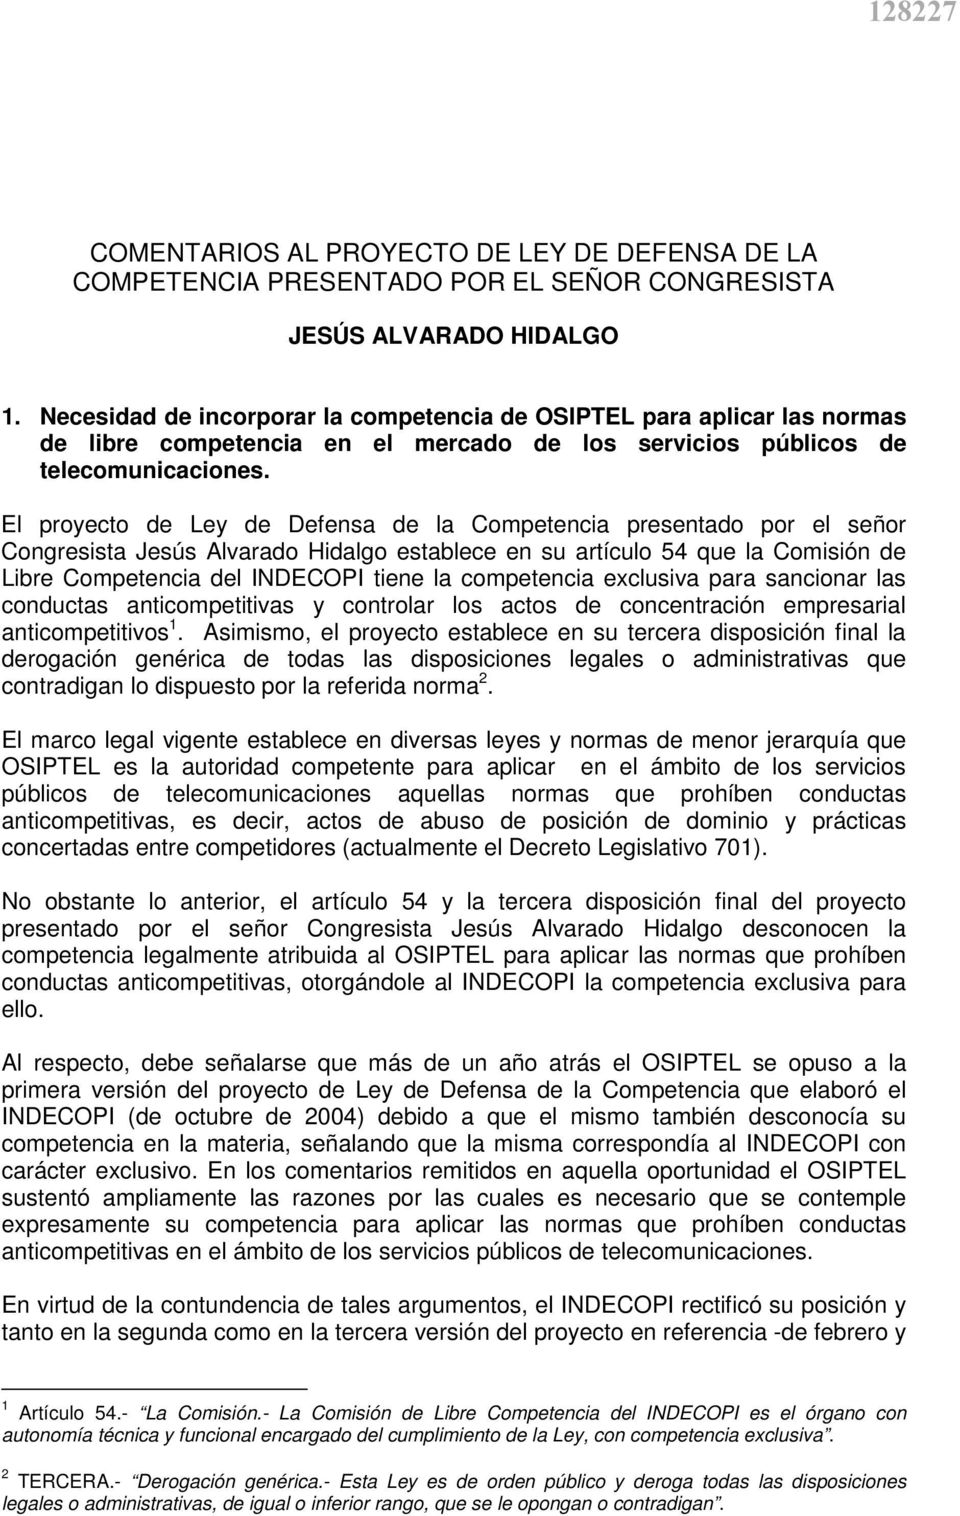 El proyecto de Ley de Defensa de la Competencia presentado por el señor Congresista Jesús Alvarado Hidalgo establece en su artículo 54 que la Comisión de Libre Competencia del INDECOPI tiene la